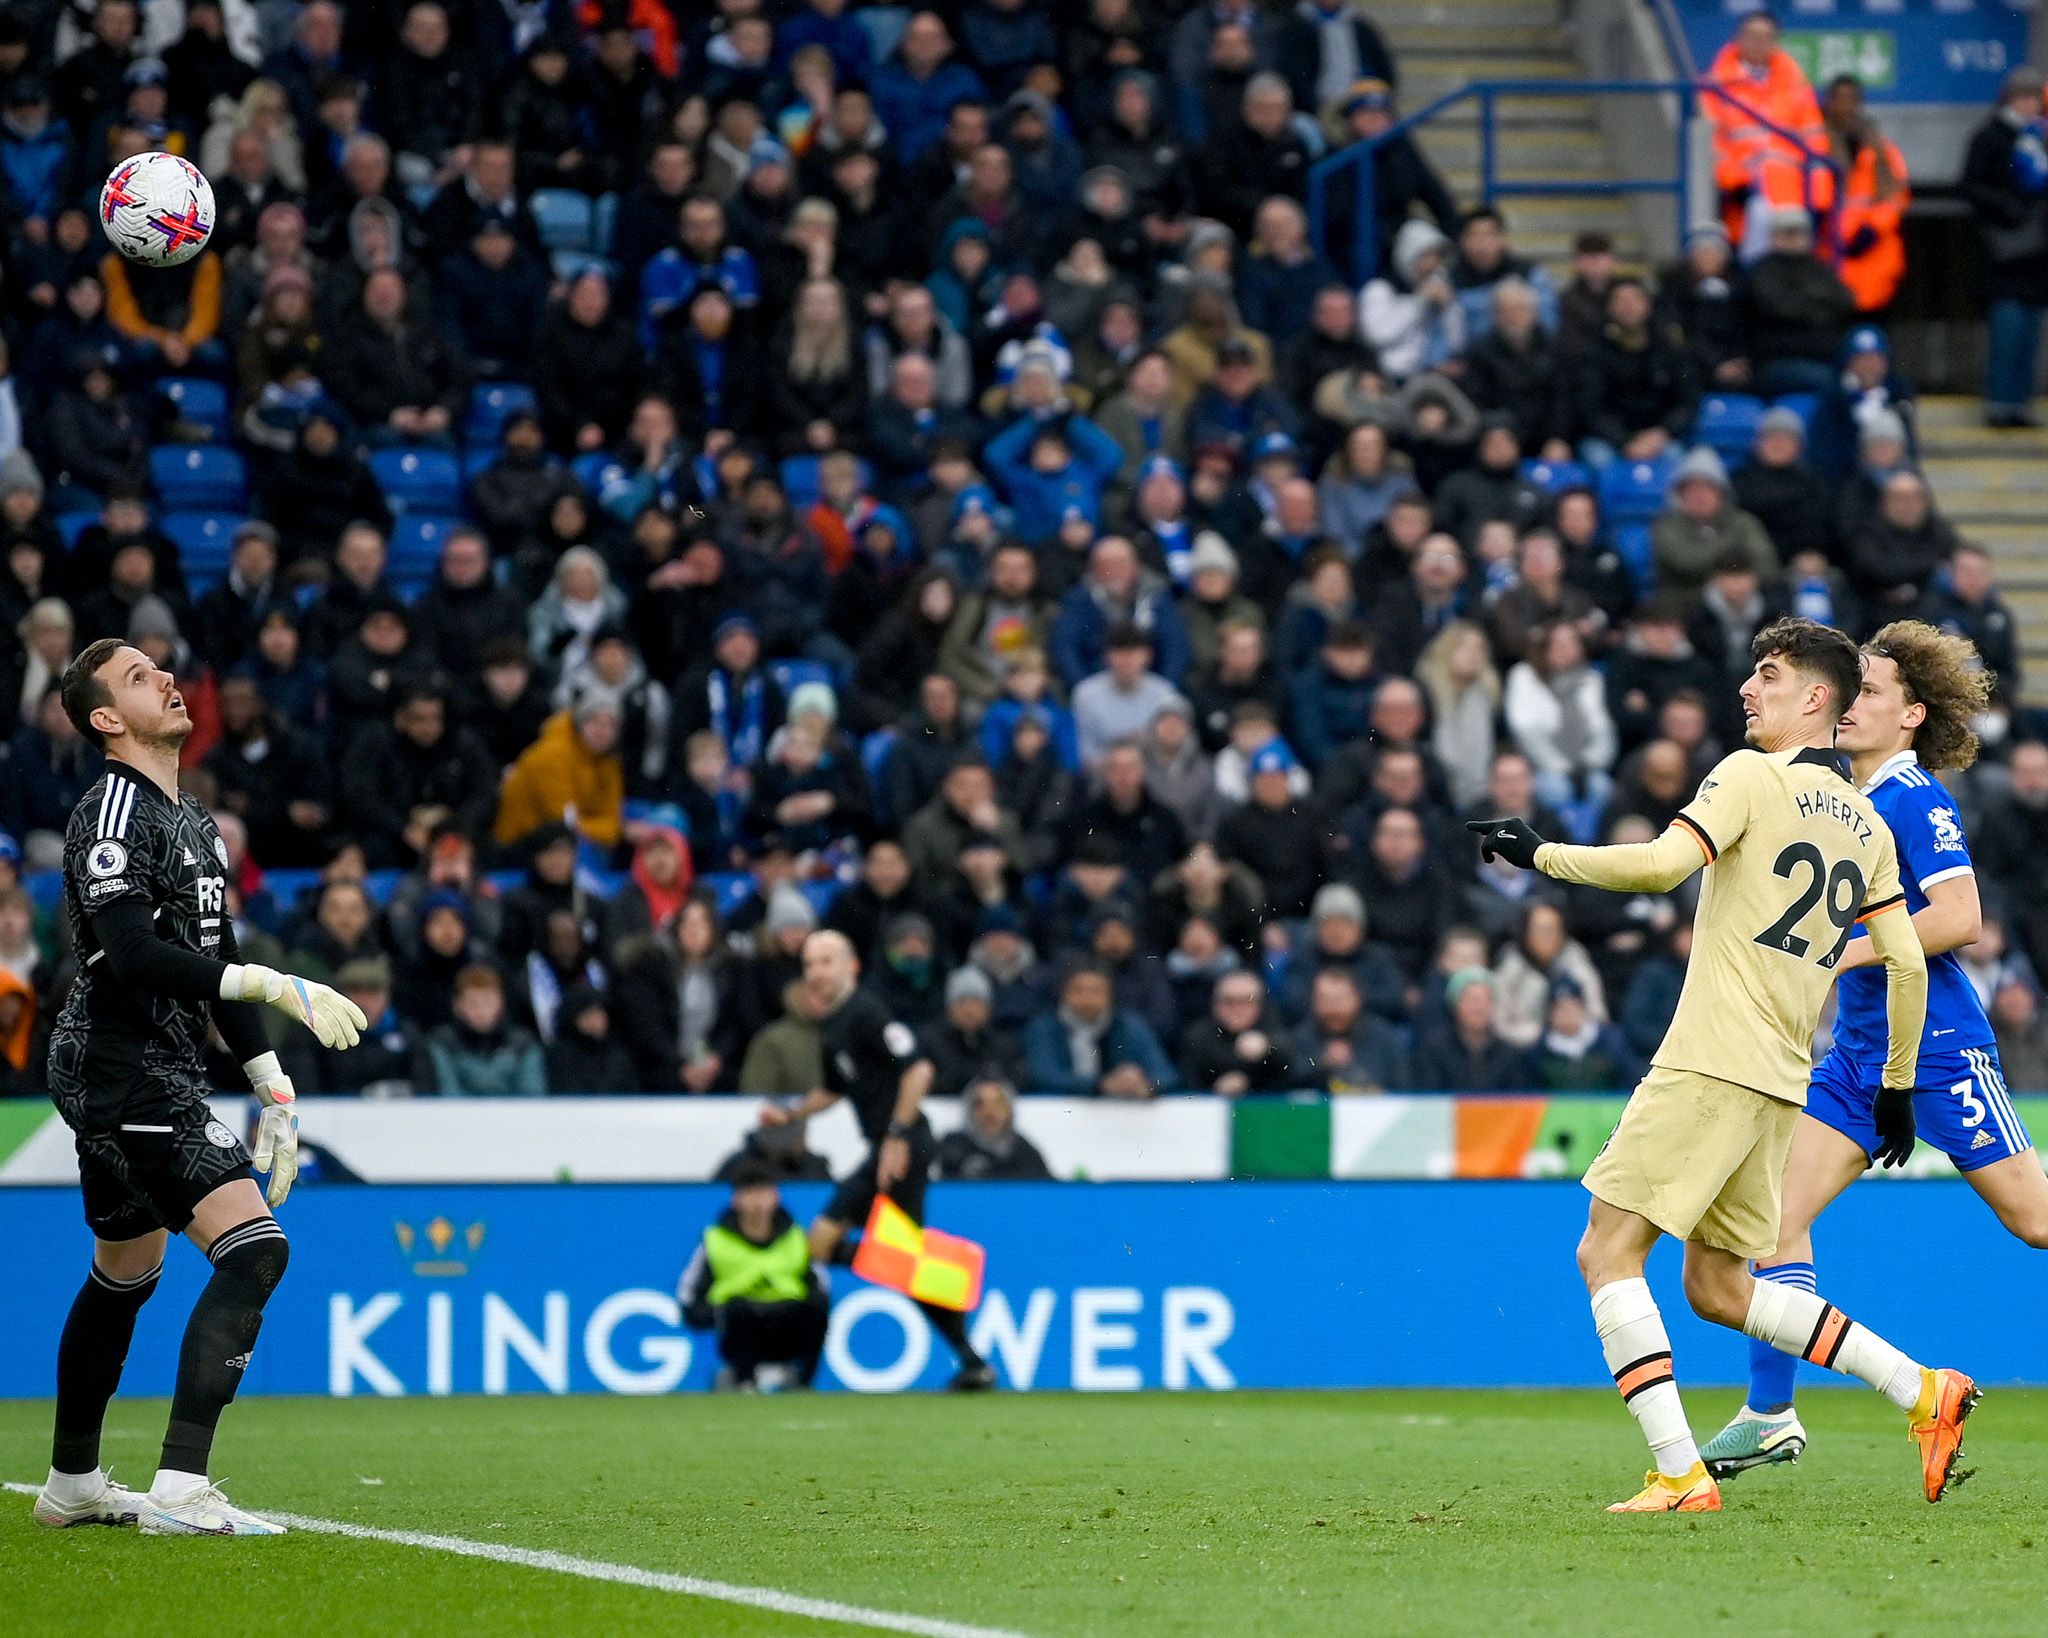 Chelsea berhasil meraih tiga poin setelah menaklukkan Leicester City 3-1 dalam pertandingan Liga Inggris matchday ke-27 yang digelar di King Power Stadium